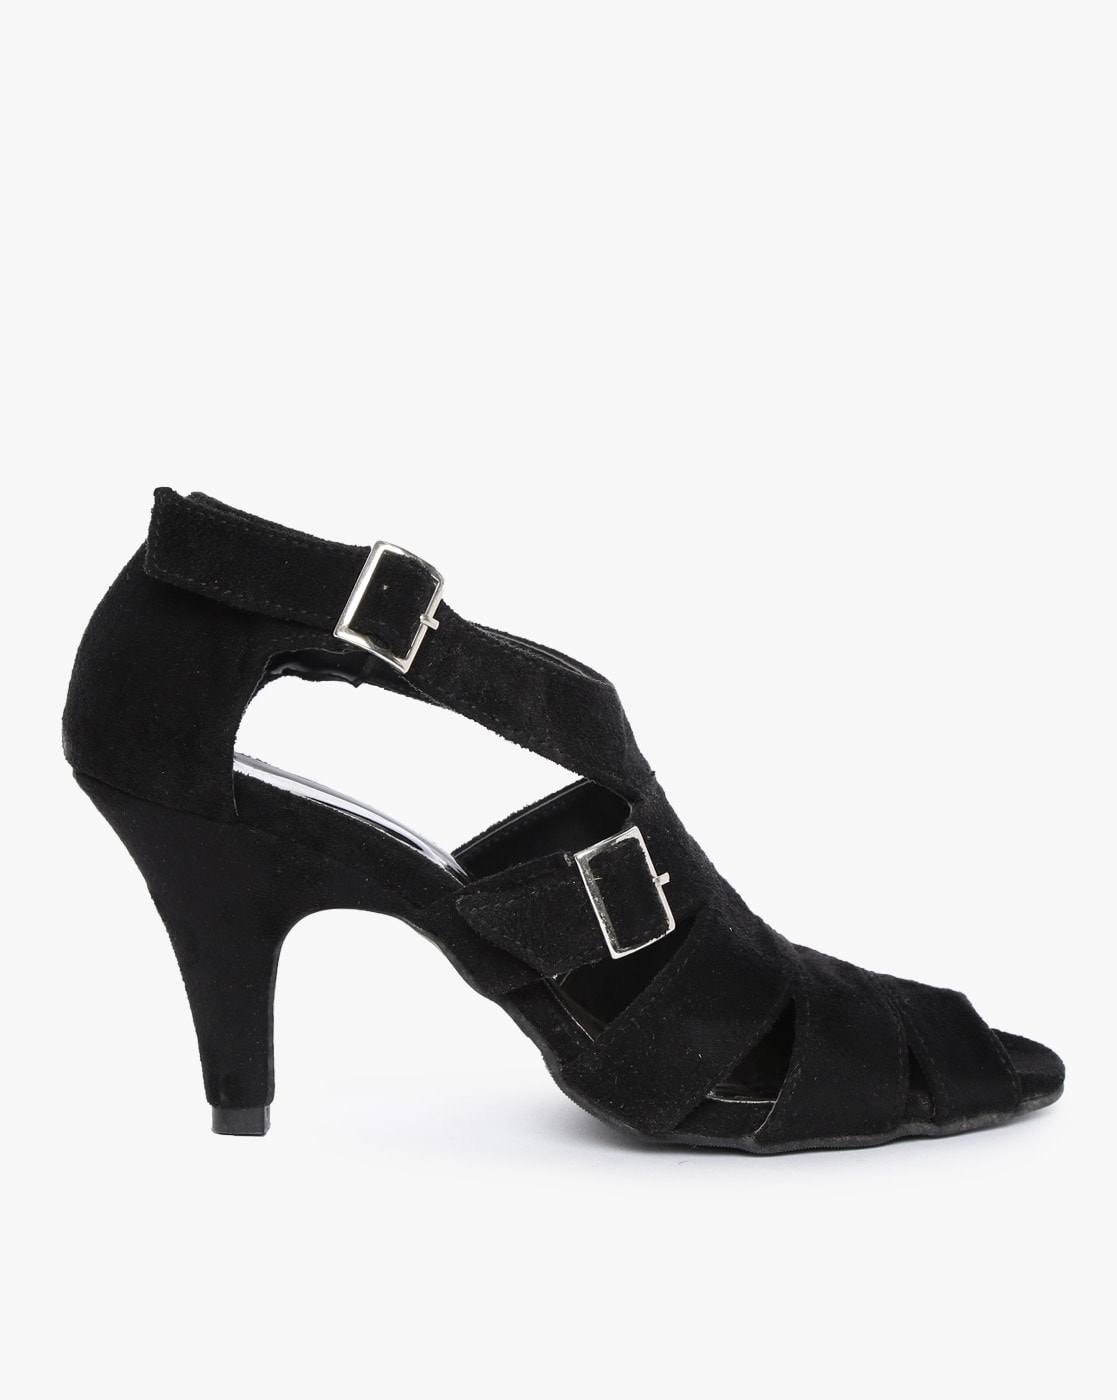 strappy black kitten heels